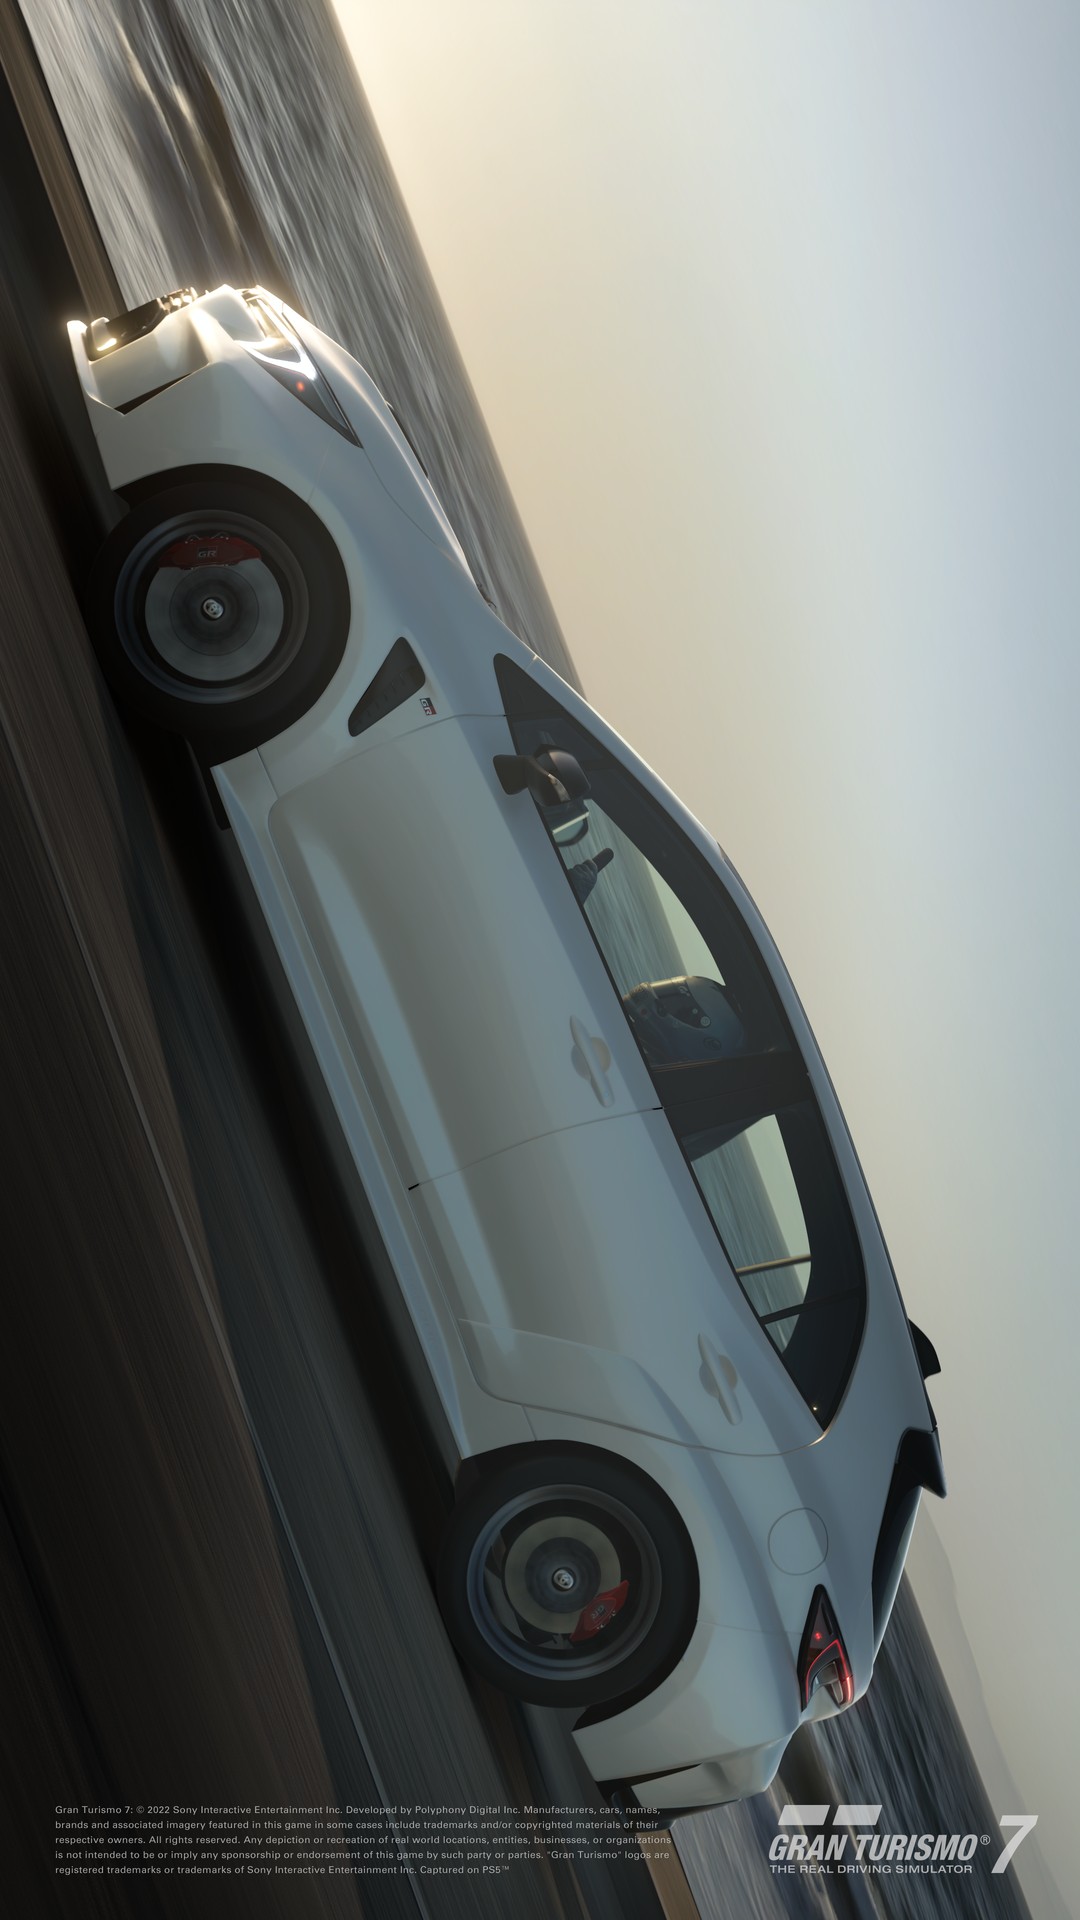 Gran Turismo 7 recebe atualização 1.36 em 7 de agosto com o carro do filme  e mais - PSX Brasil